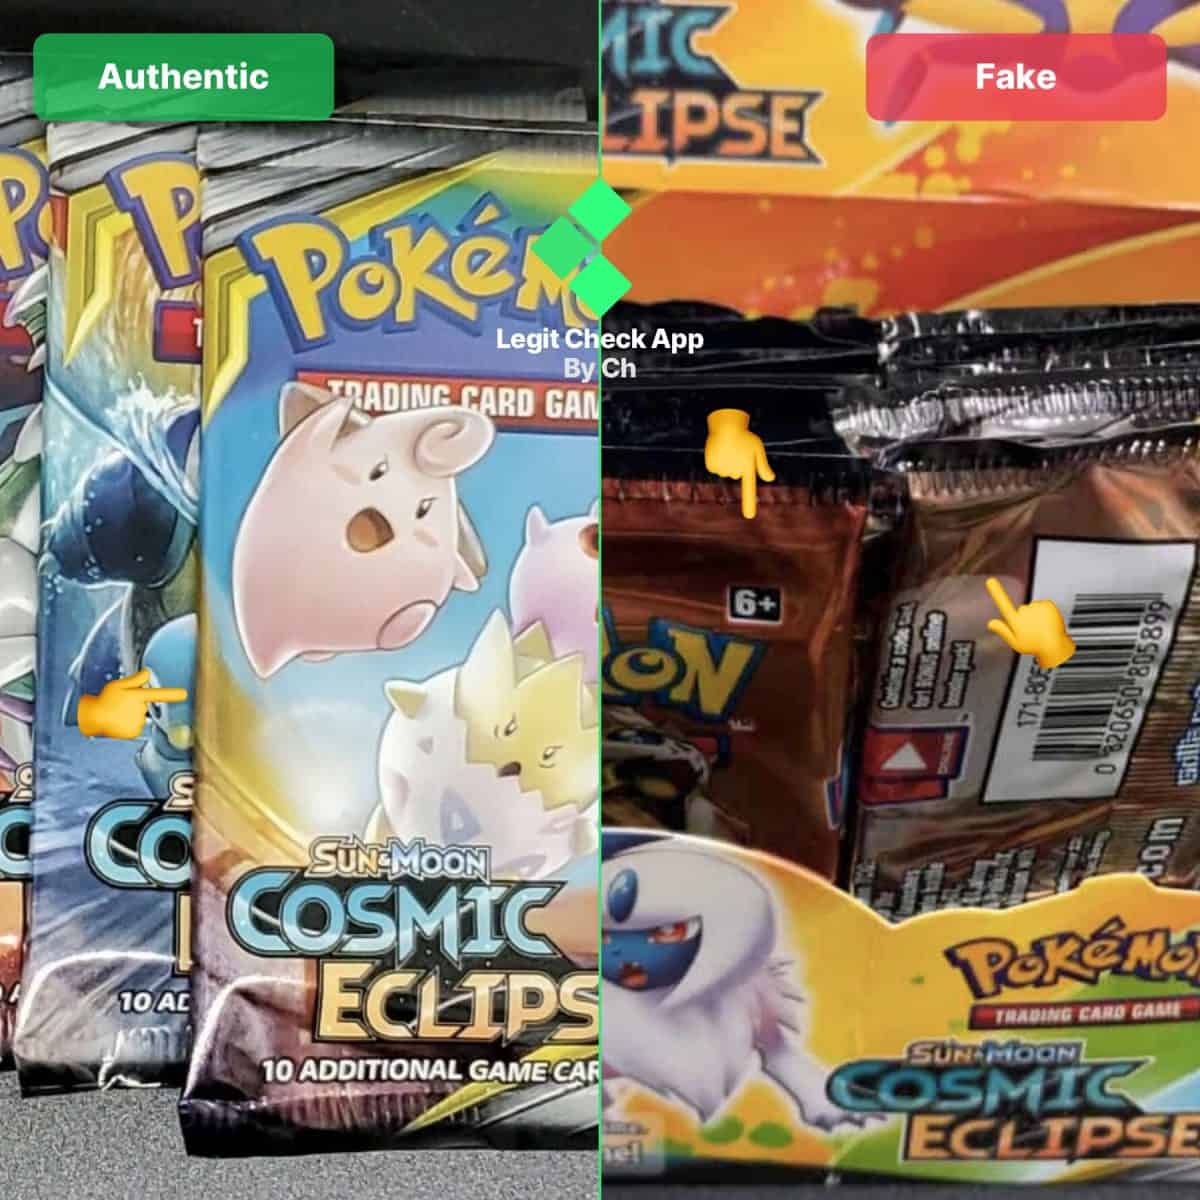 authentic vs replica pokemon tcg